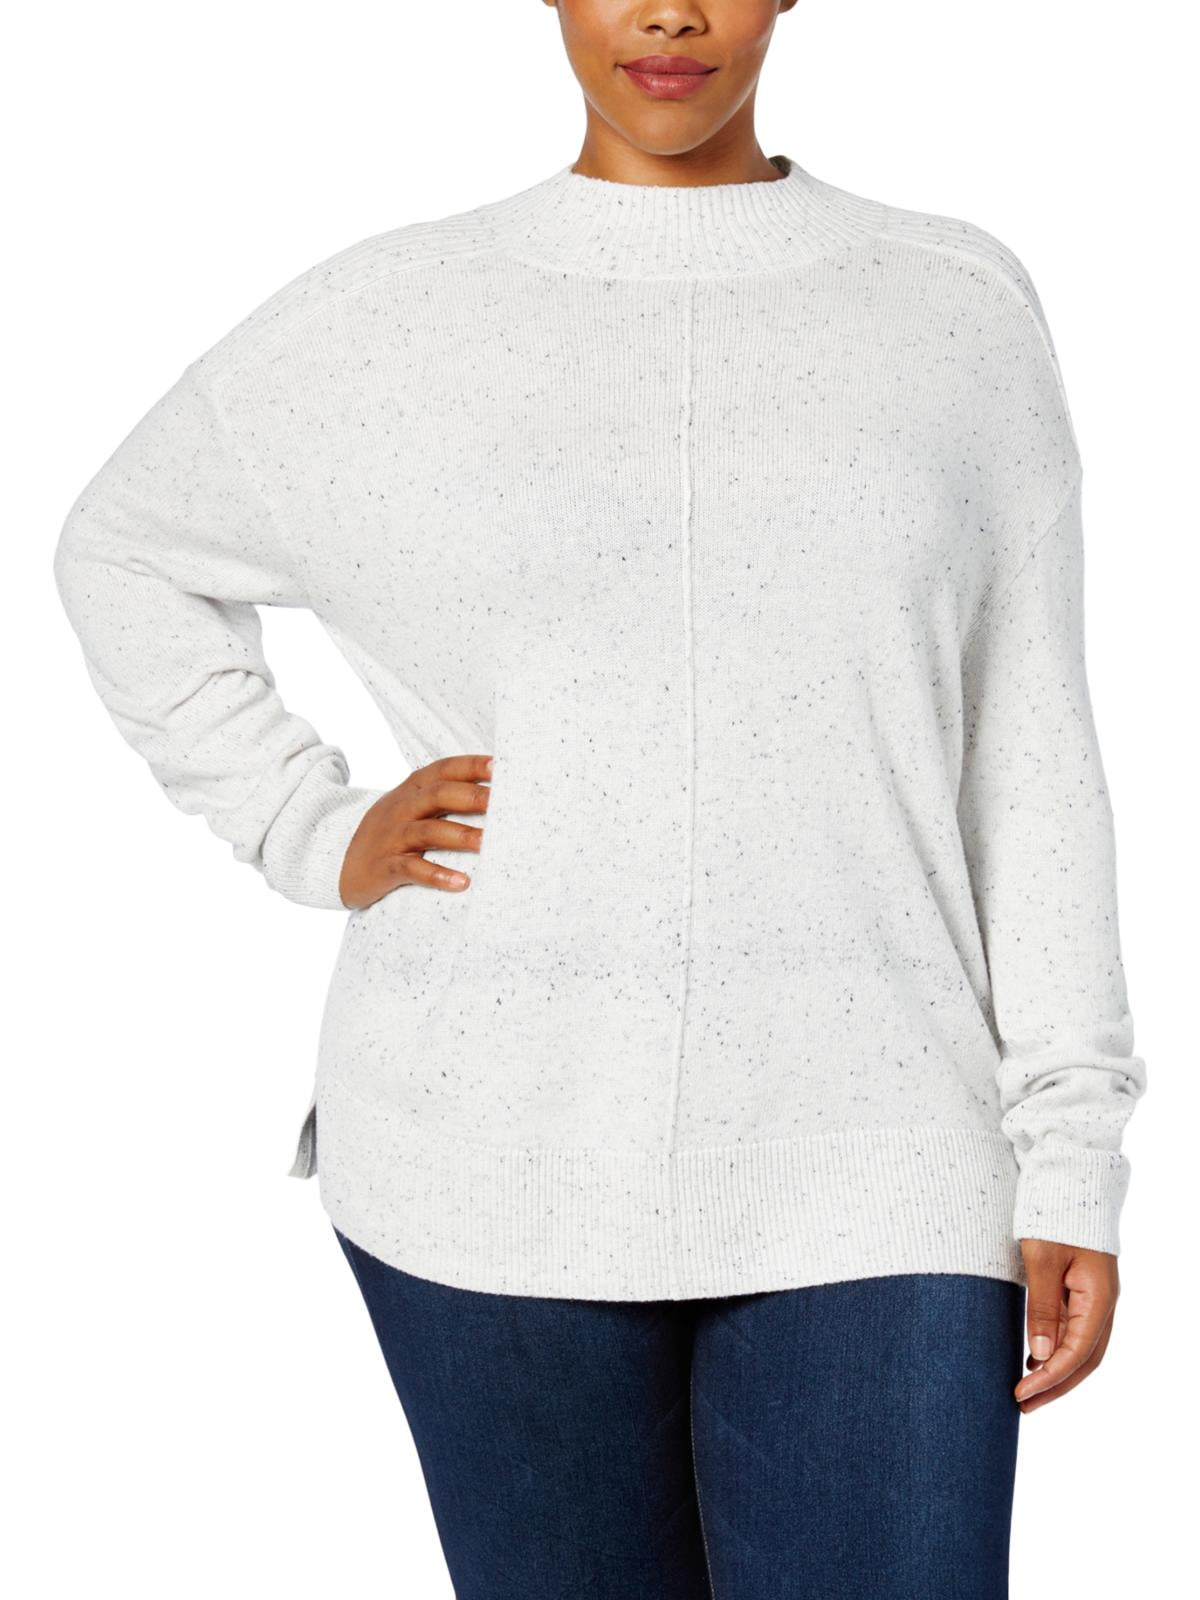 New Women's #232-489 Karen Scott Light Teal Mock Neck Sweater Sz XL 